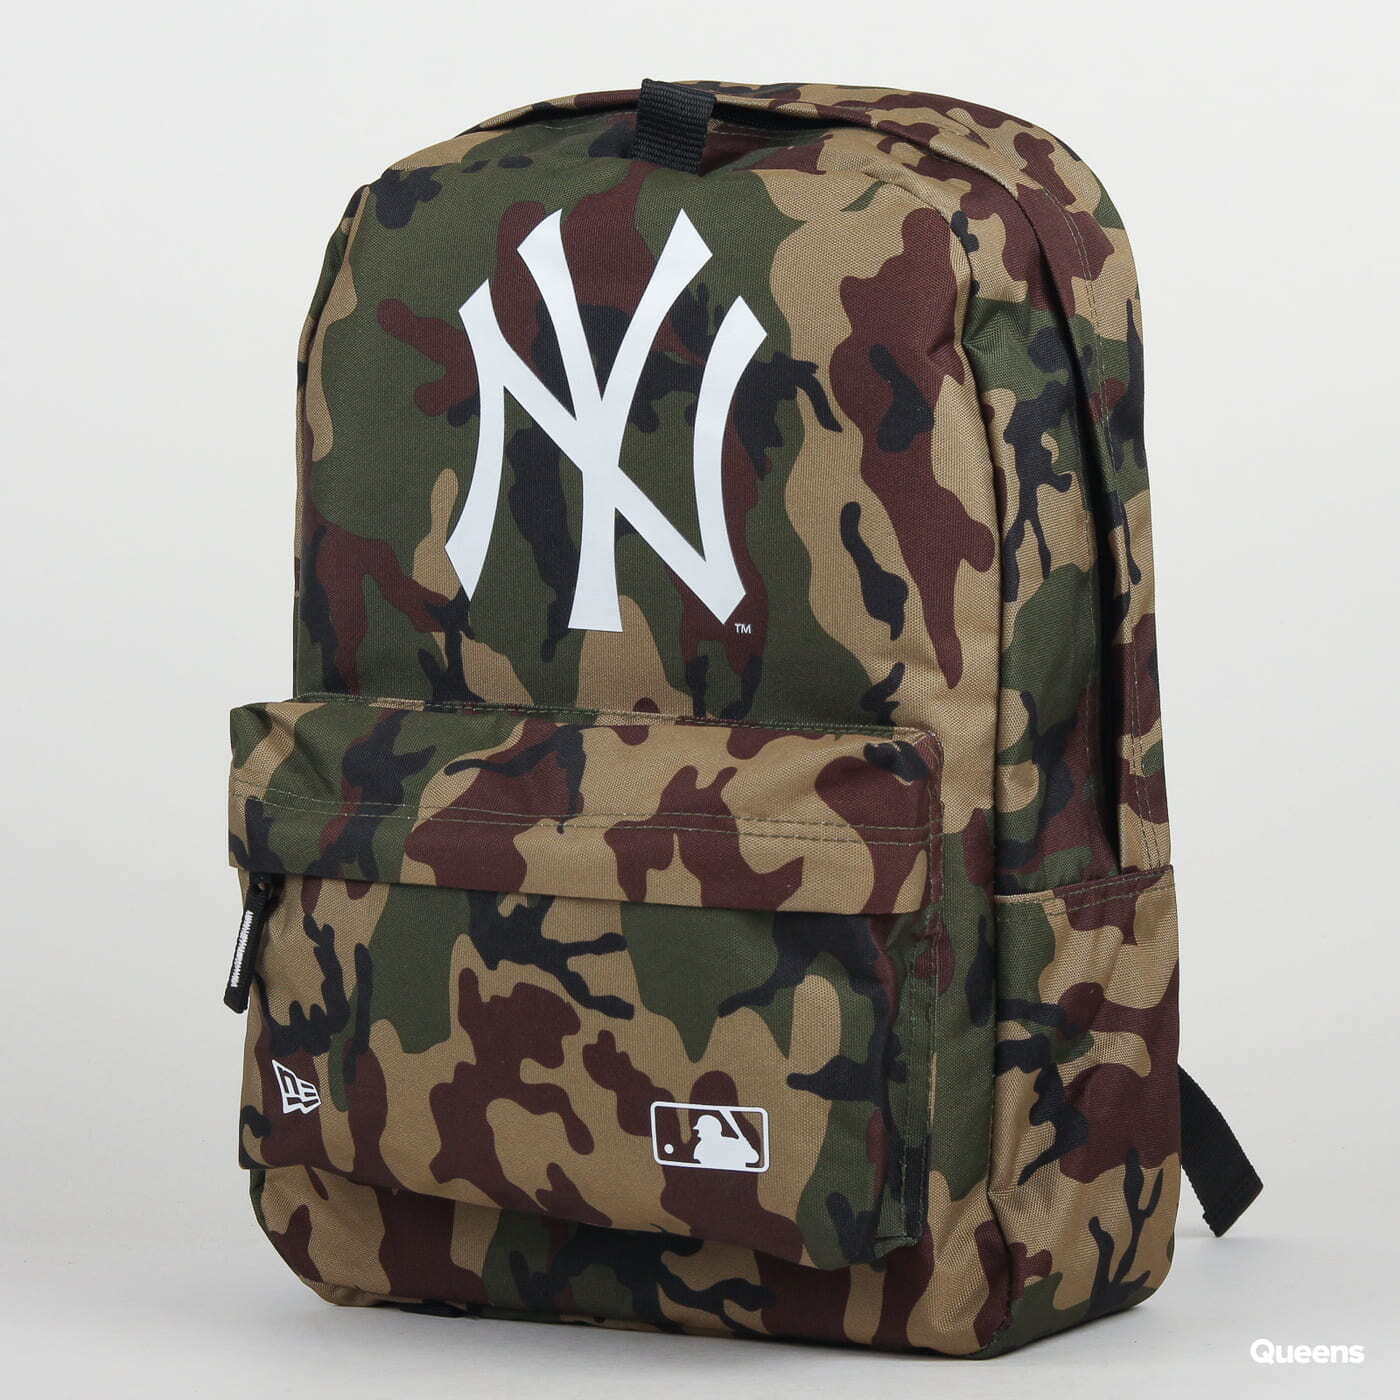 Backpacks New Era MLB Stadium Bag NY Camo Green